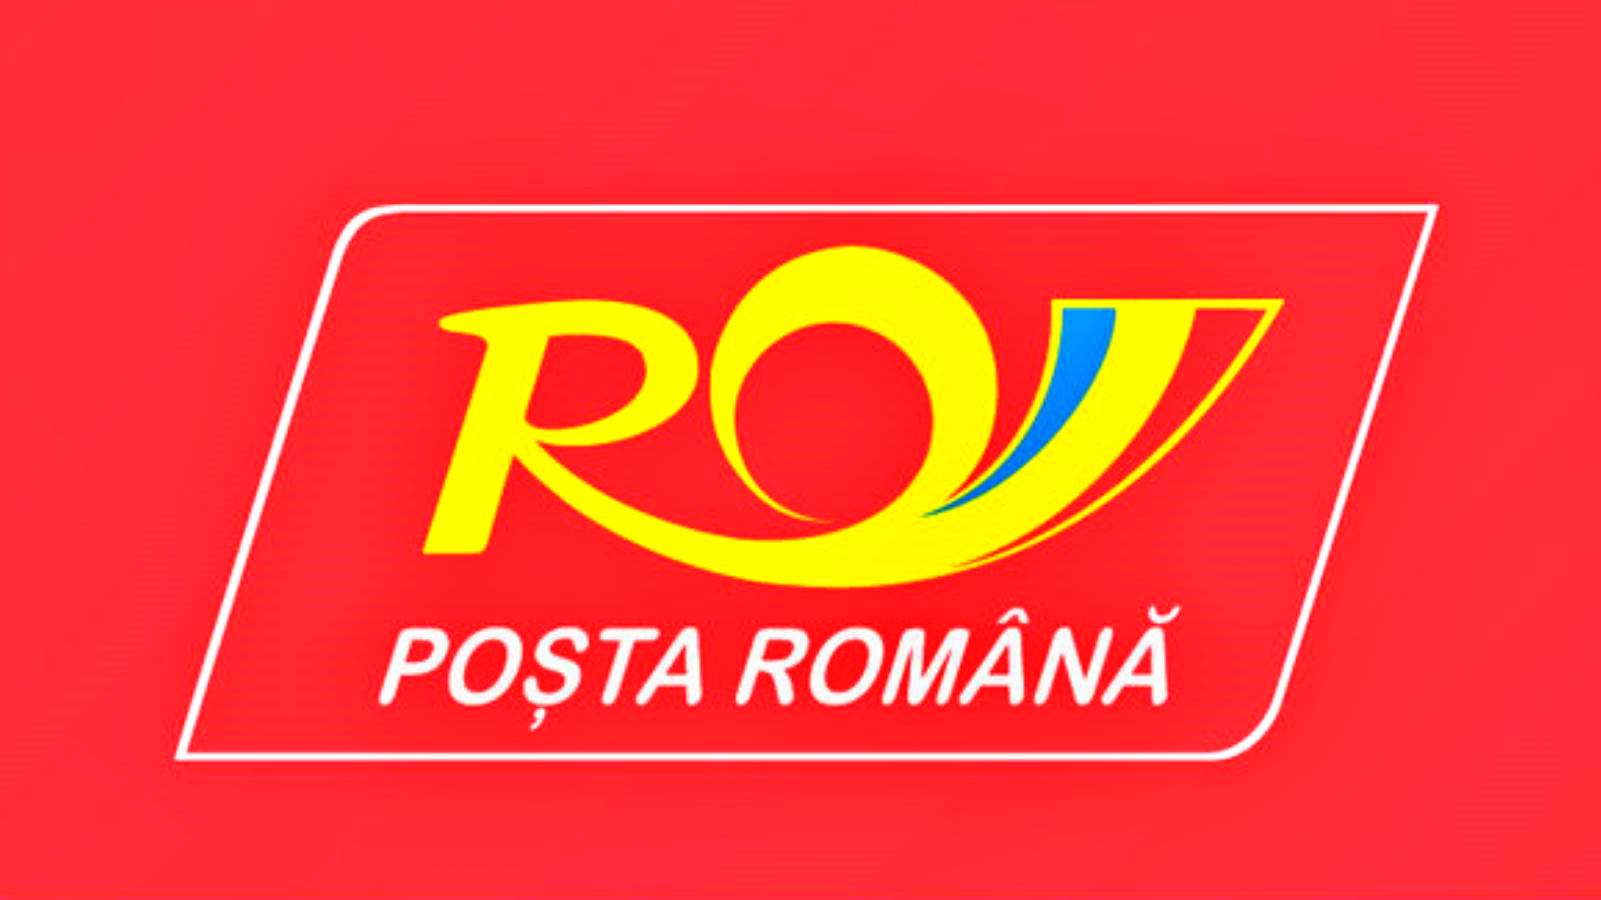 Roemeense post beveelt bezorging van bestellingen van OLX aan